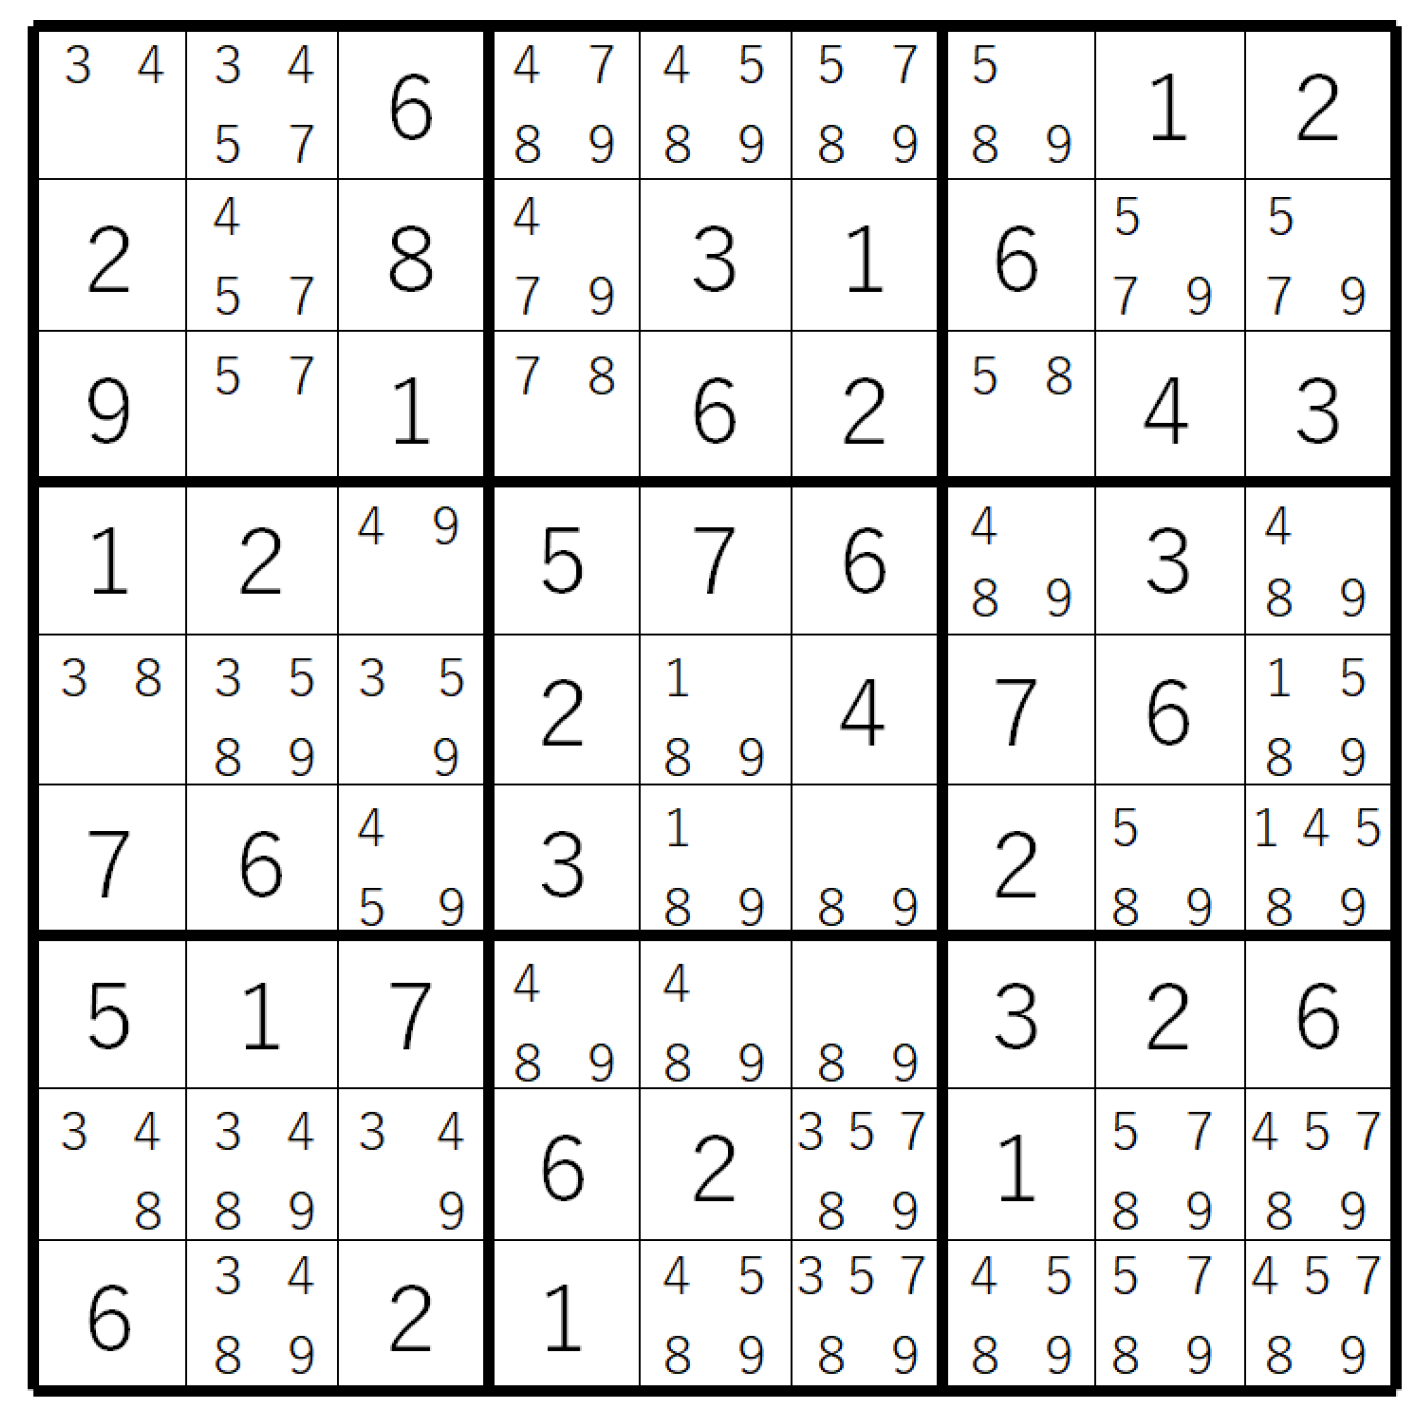 sudoku generator algorithm c